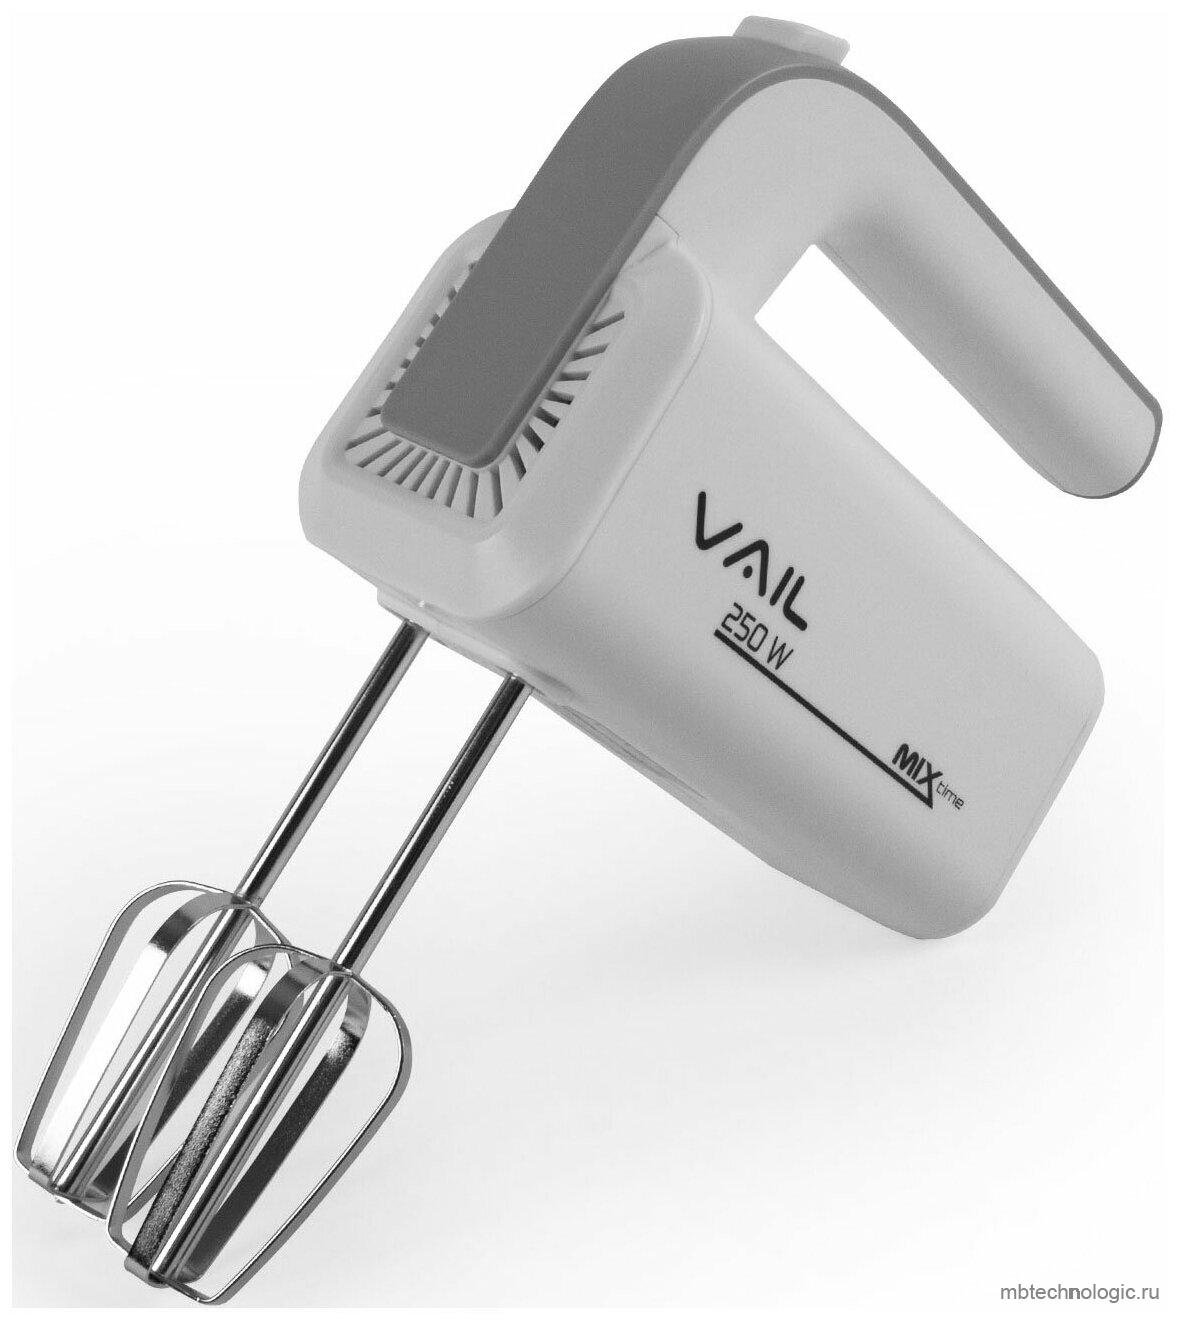 VAIL VL-5608